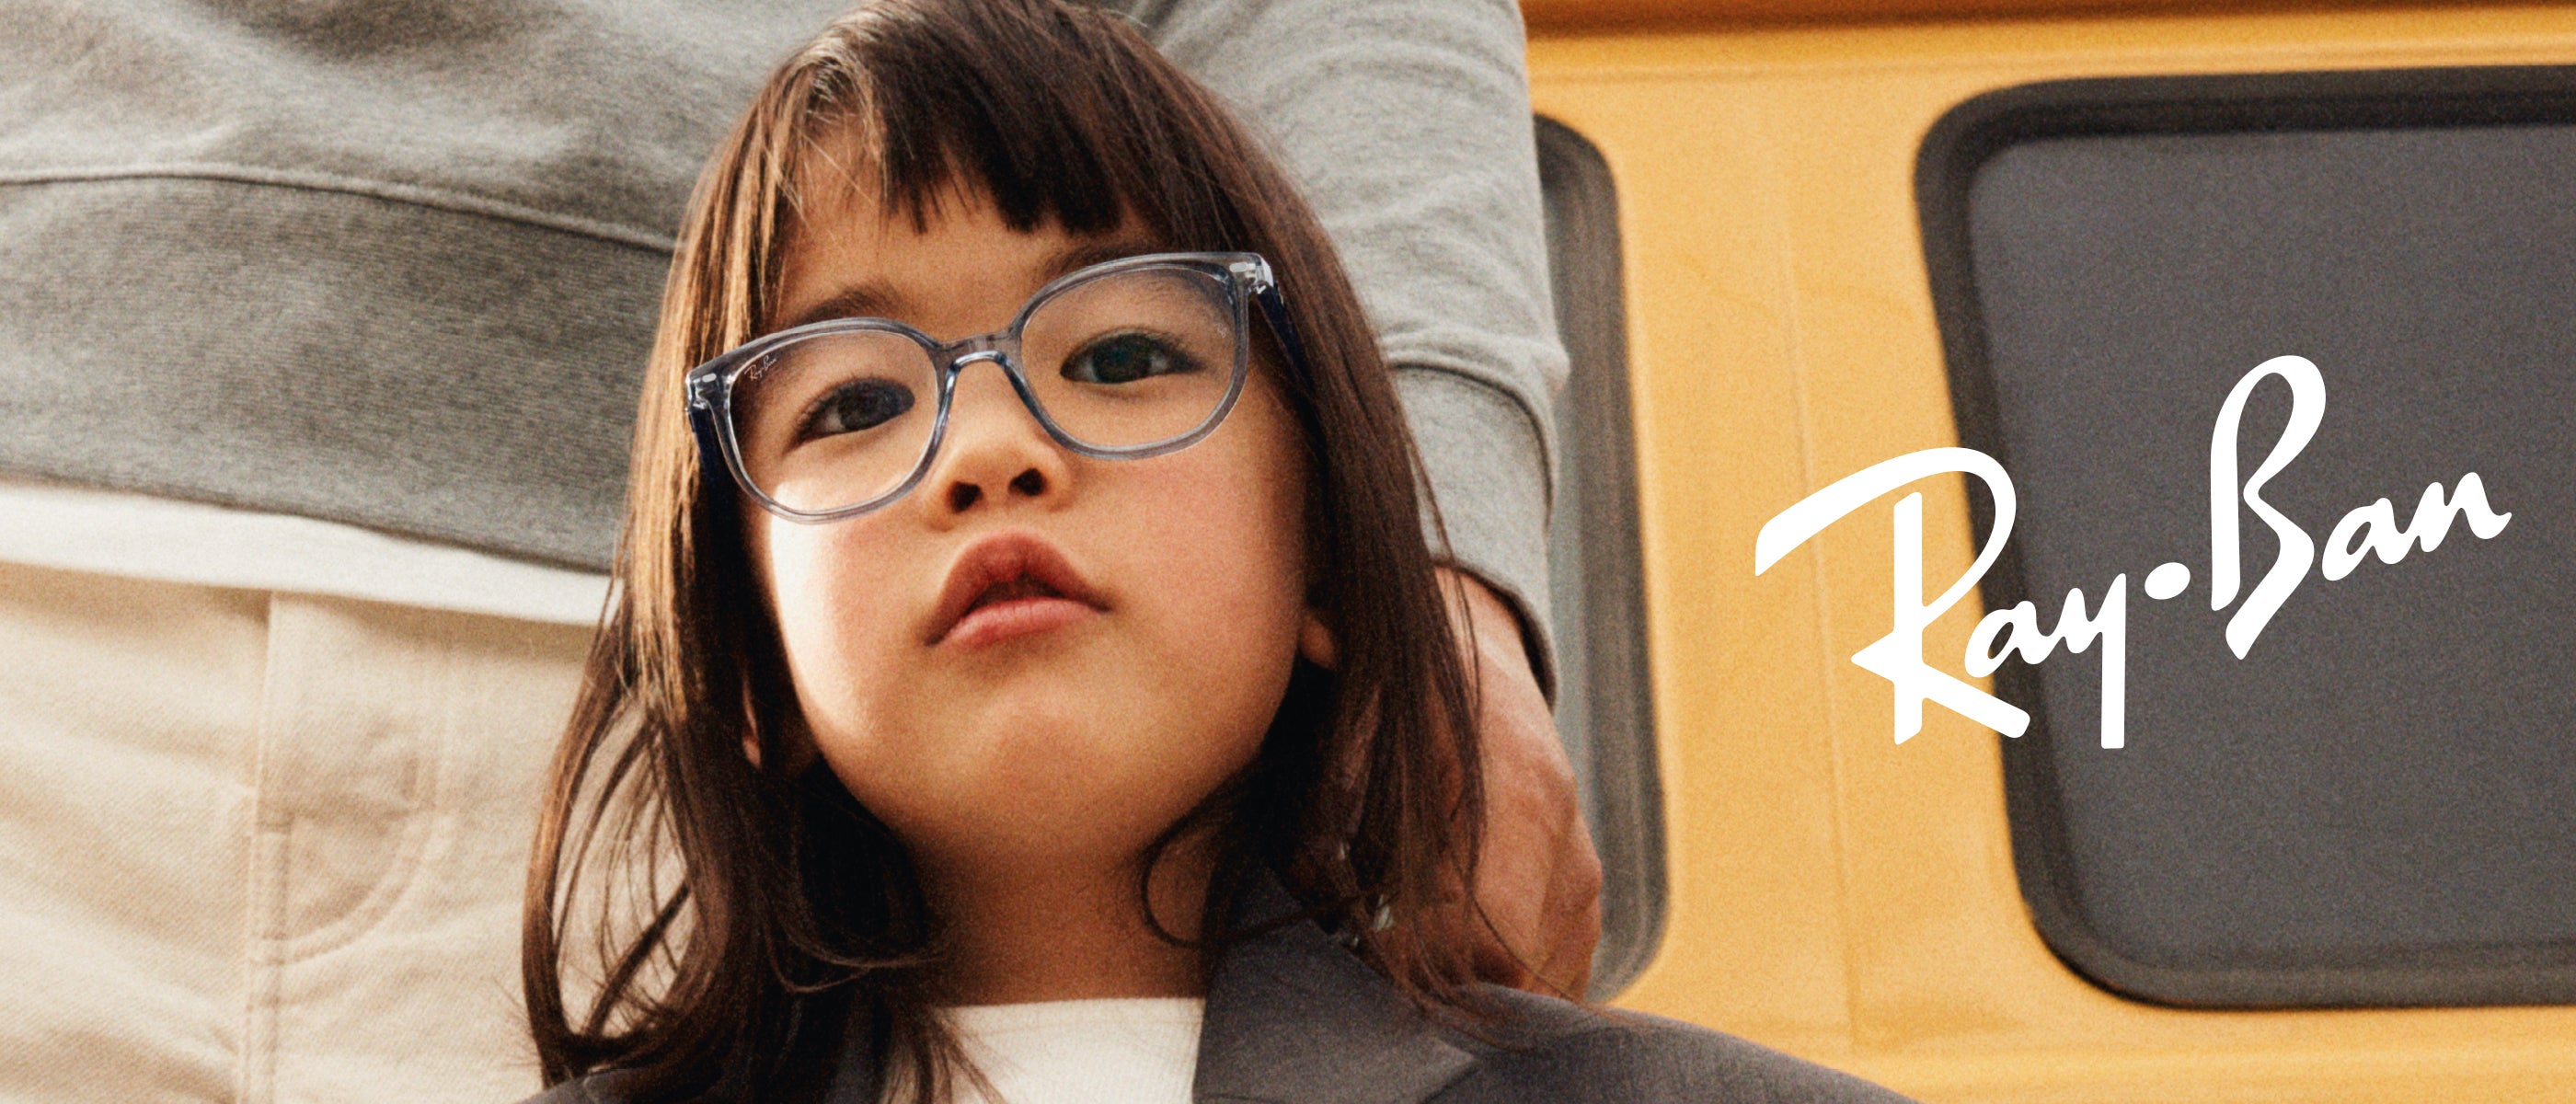 Ray-Ban Junior Glasses - Eyeglasses For Children - Buy Online - US